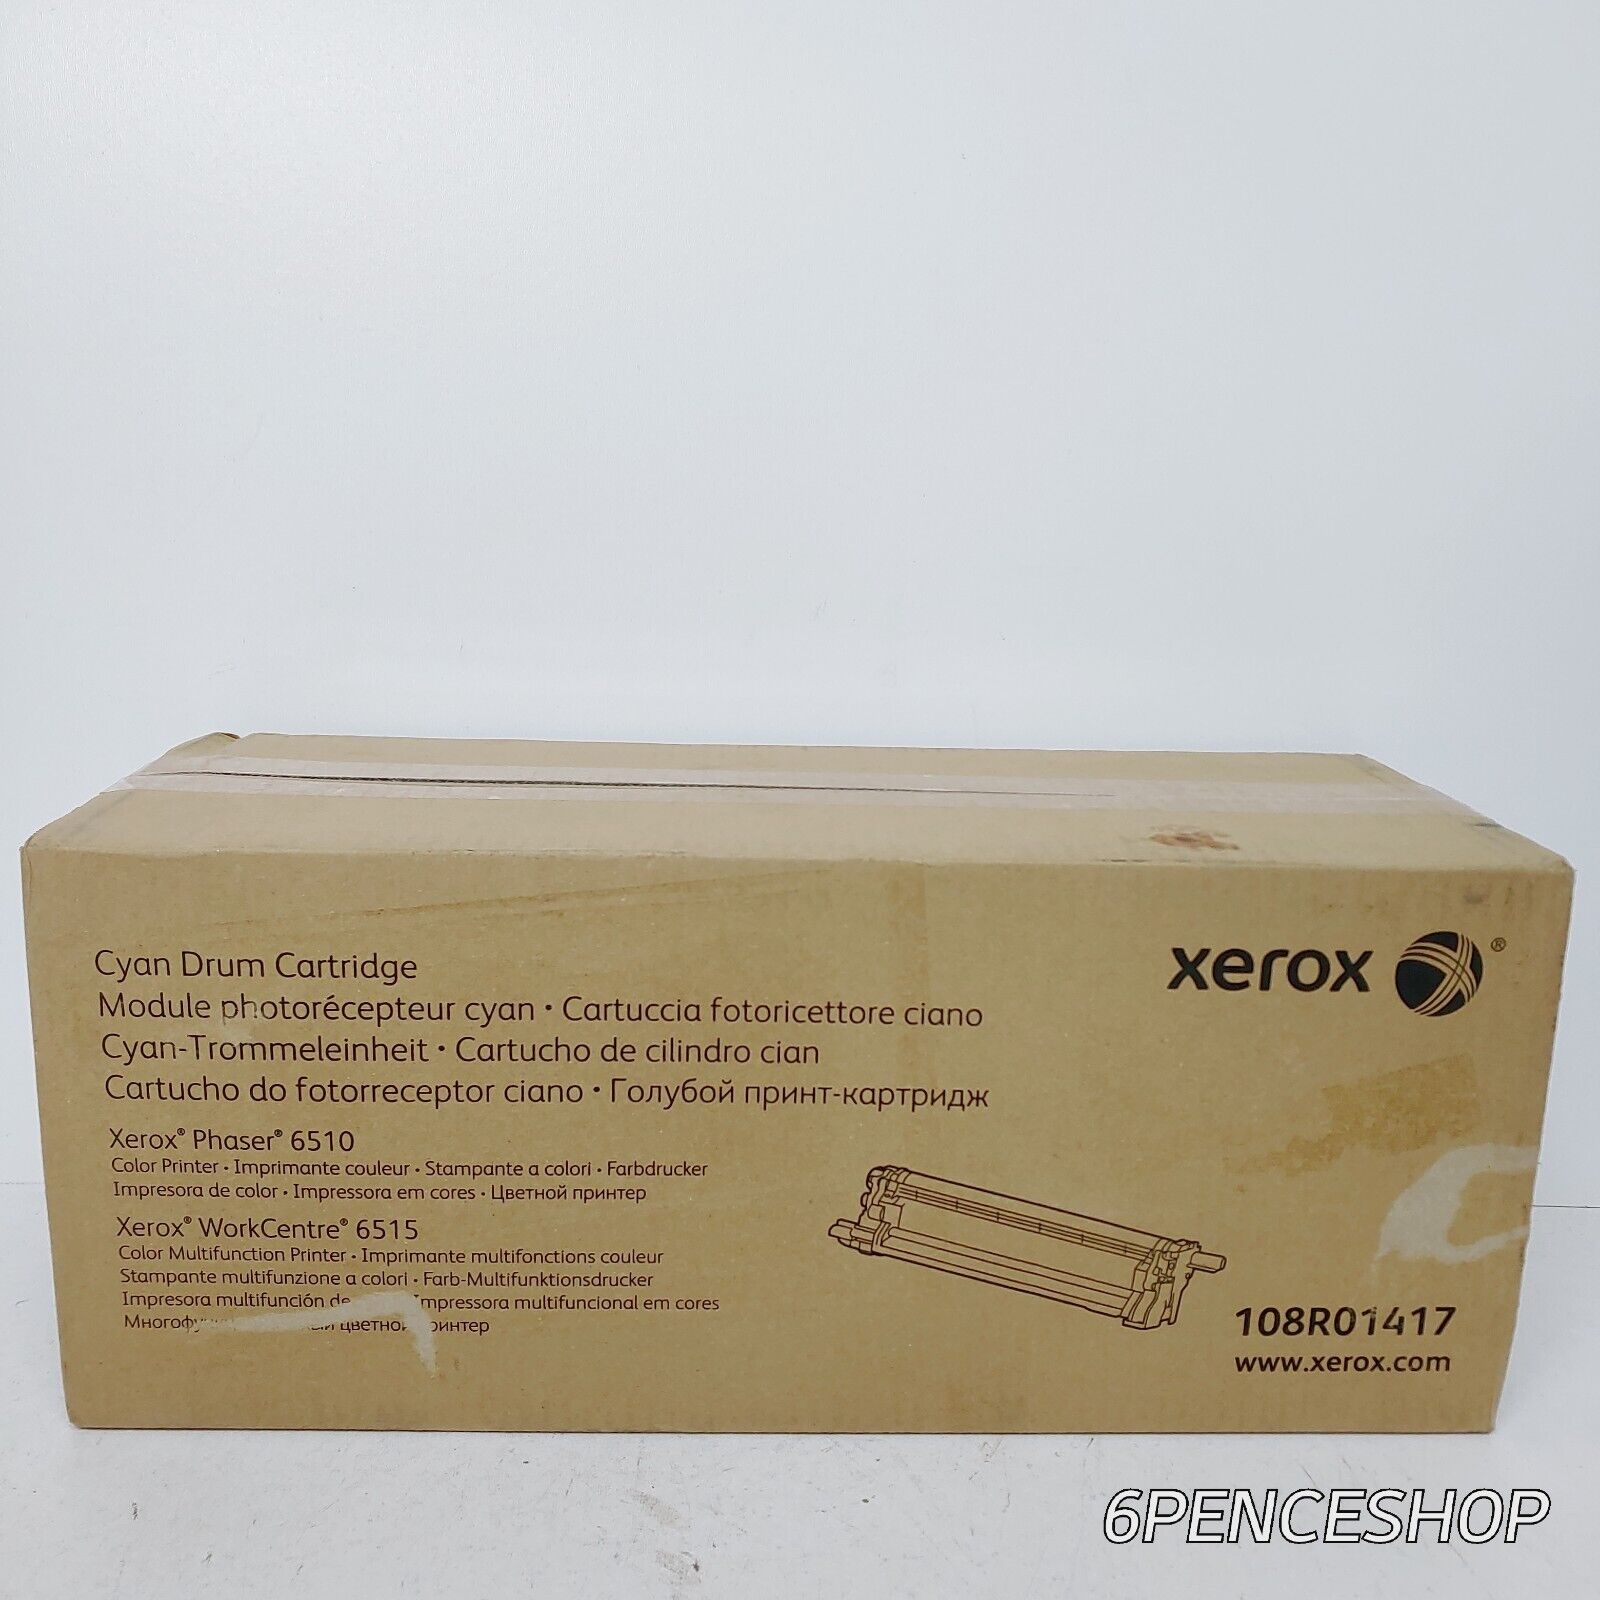 *Imperfect Box* Xerox 108R01417 Cyan Drum Cartridge CT351095